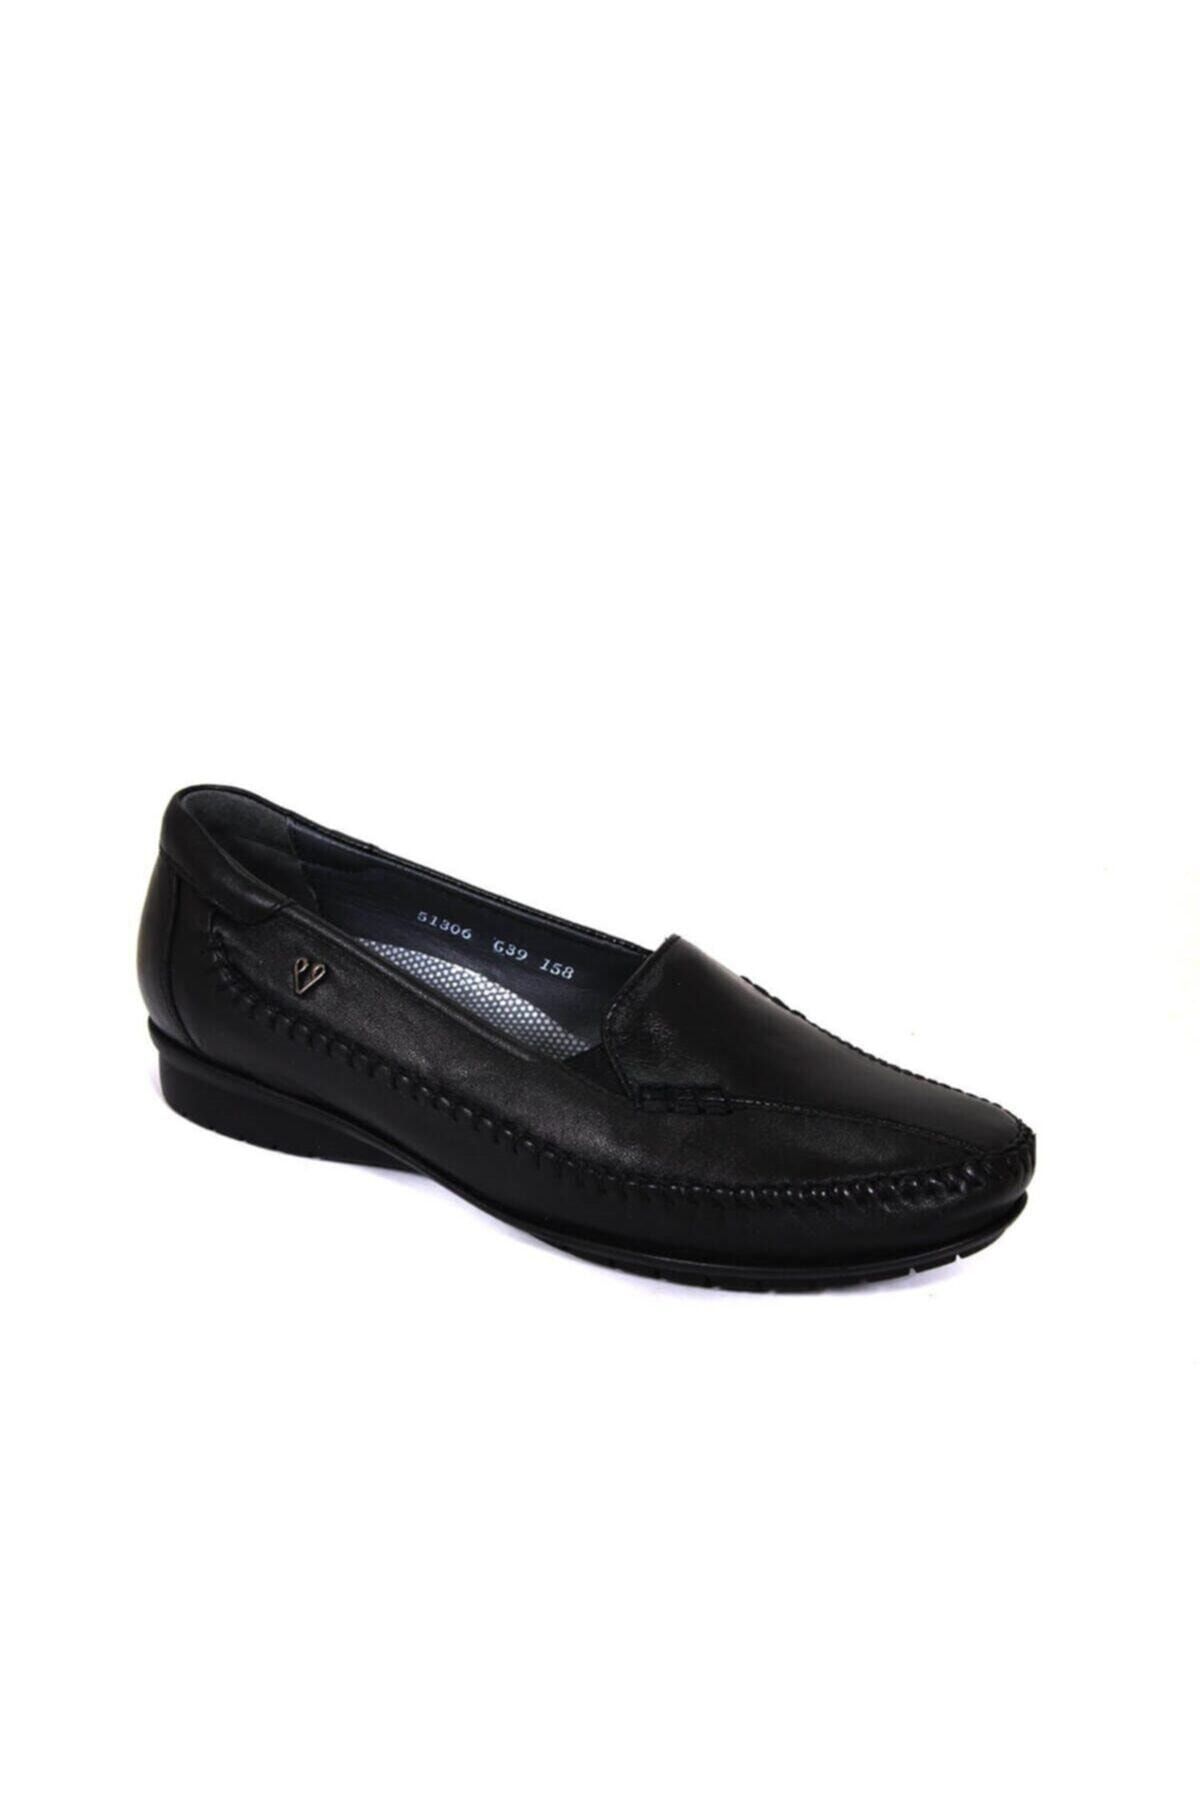 Forelli Marla-g Comfort Kadın Ayakkabı Siyah